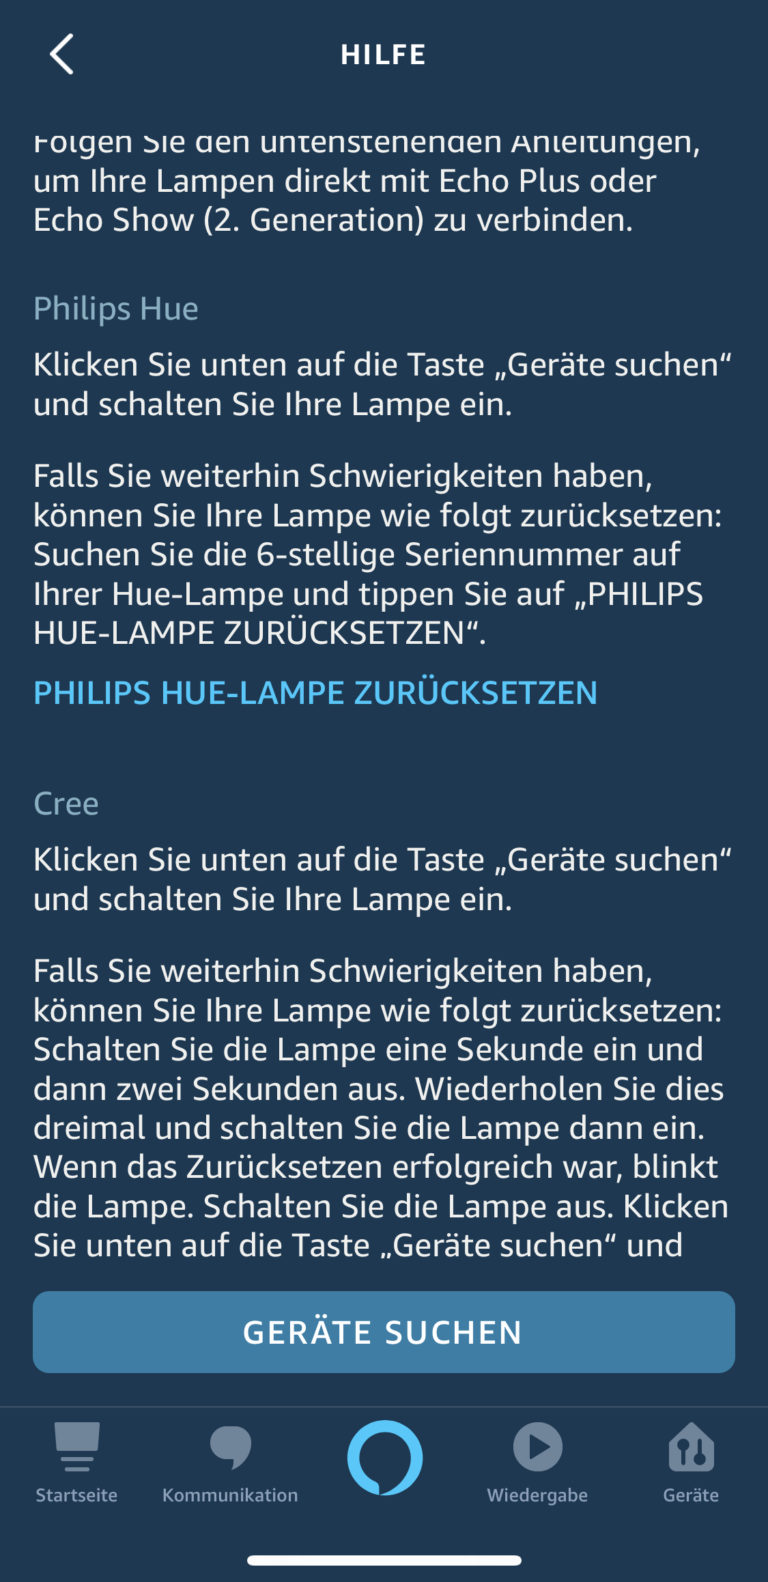 Philips Hue Lampen Reset ohne Bridge und Dimming Schalter